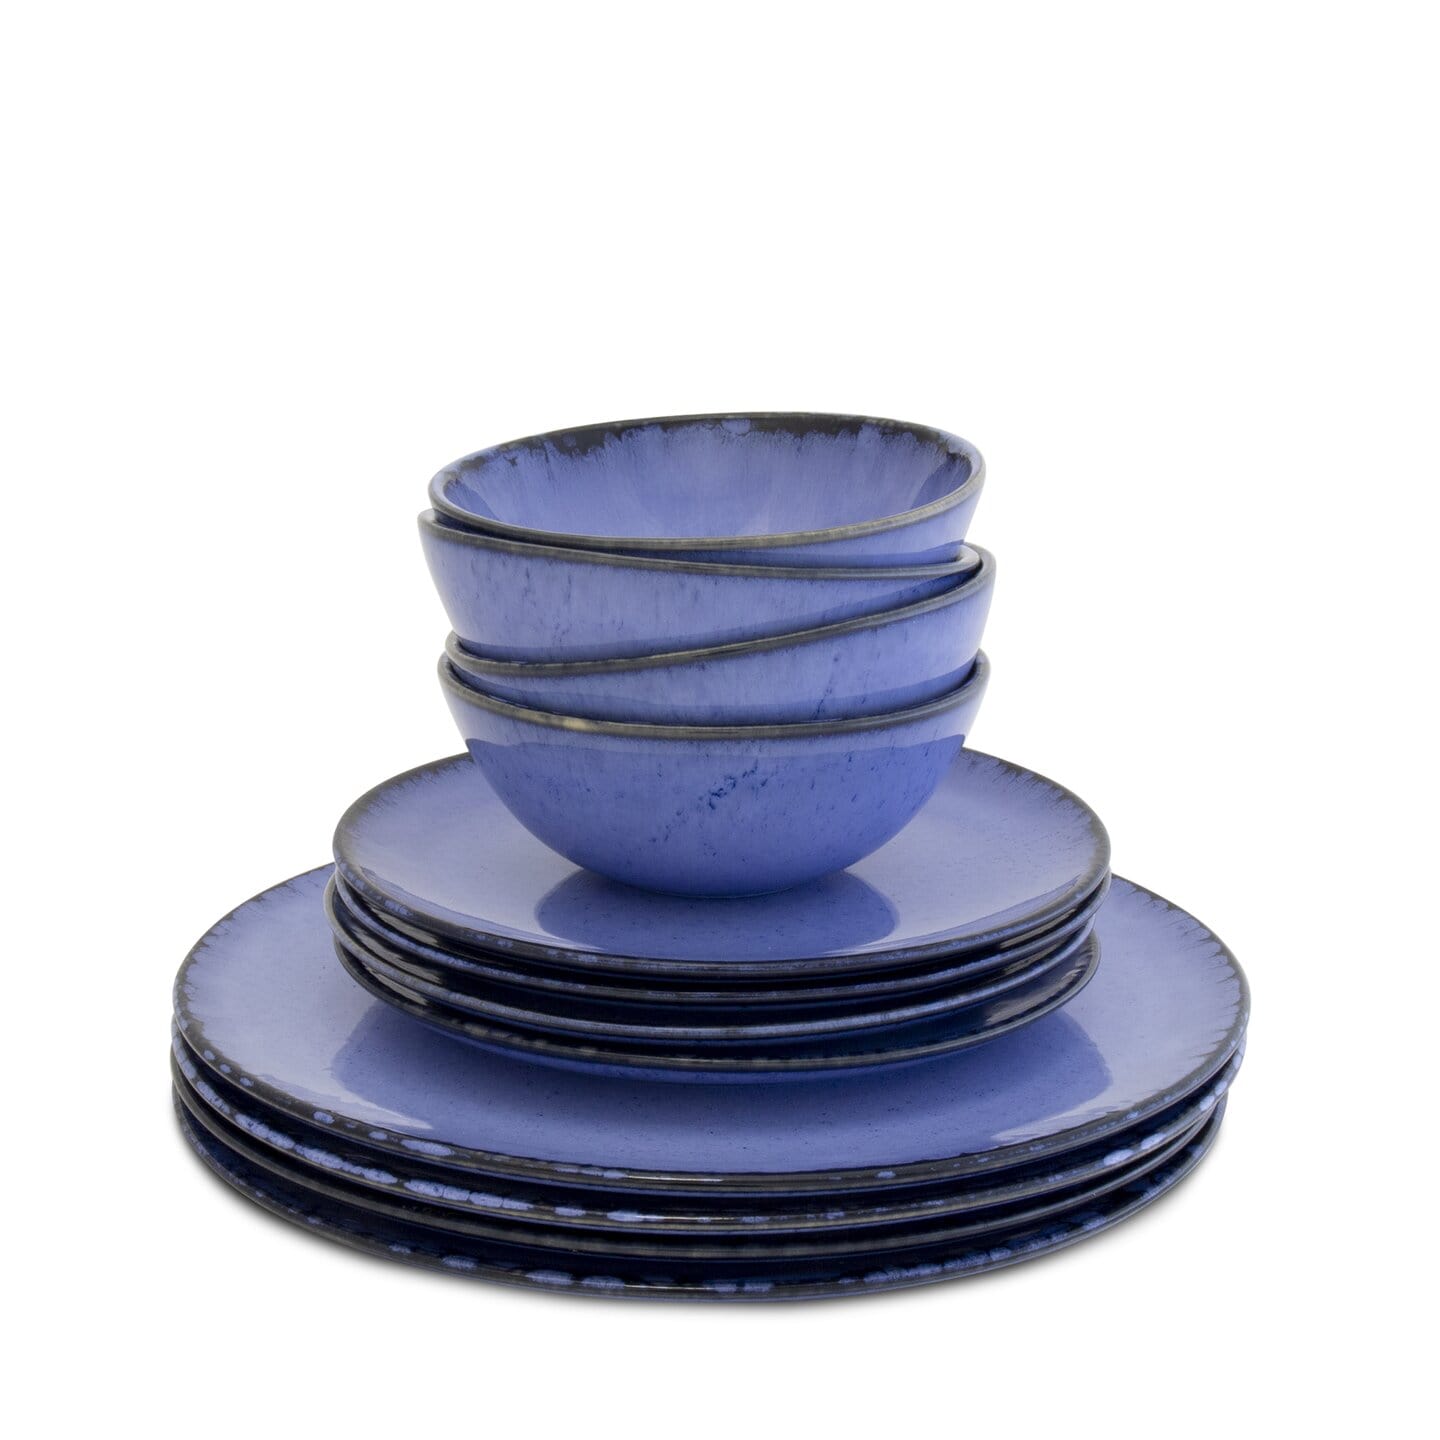 Keramik Liebe ♥ für Steingut Keramik aus Onlineshop & Portugal